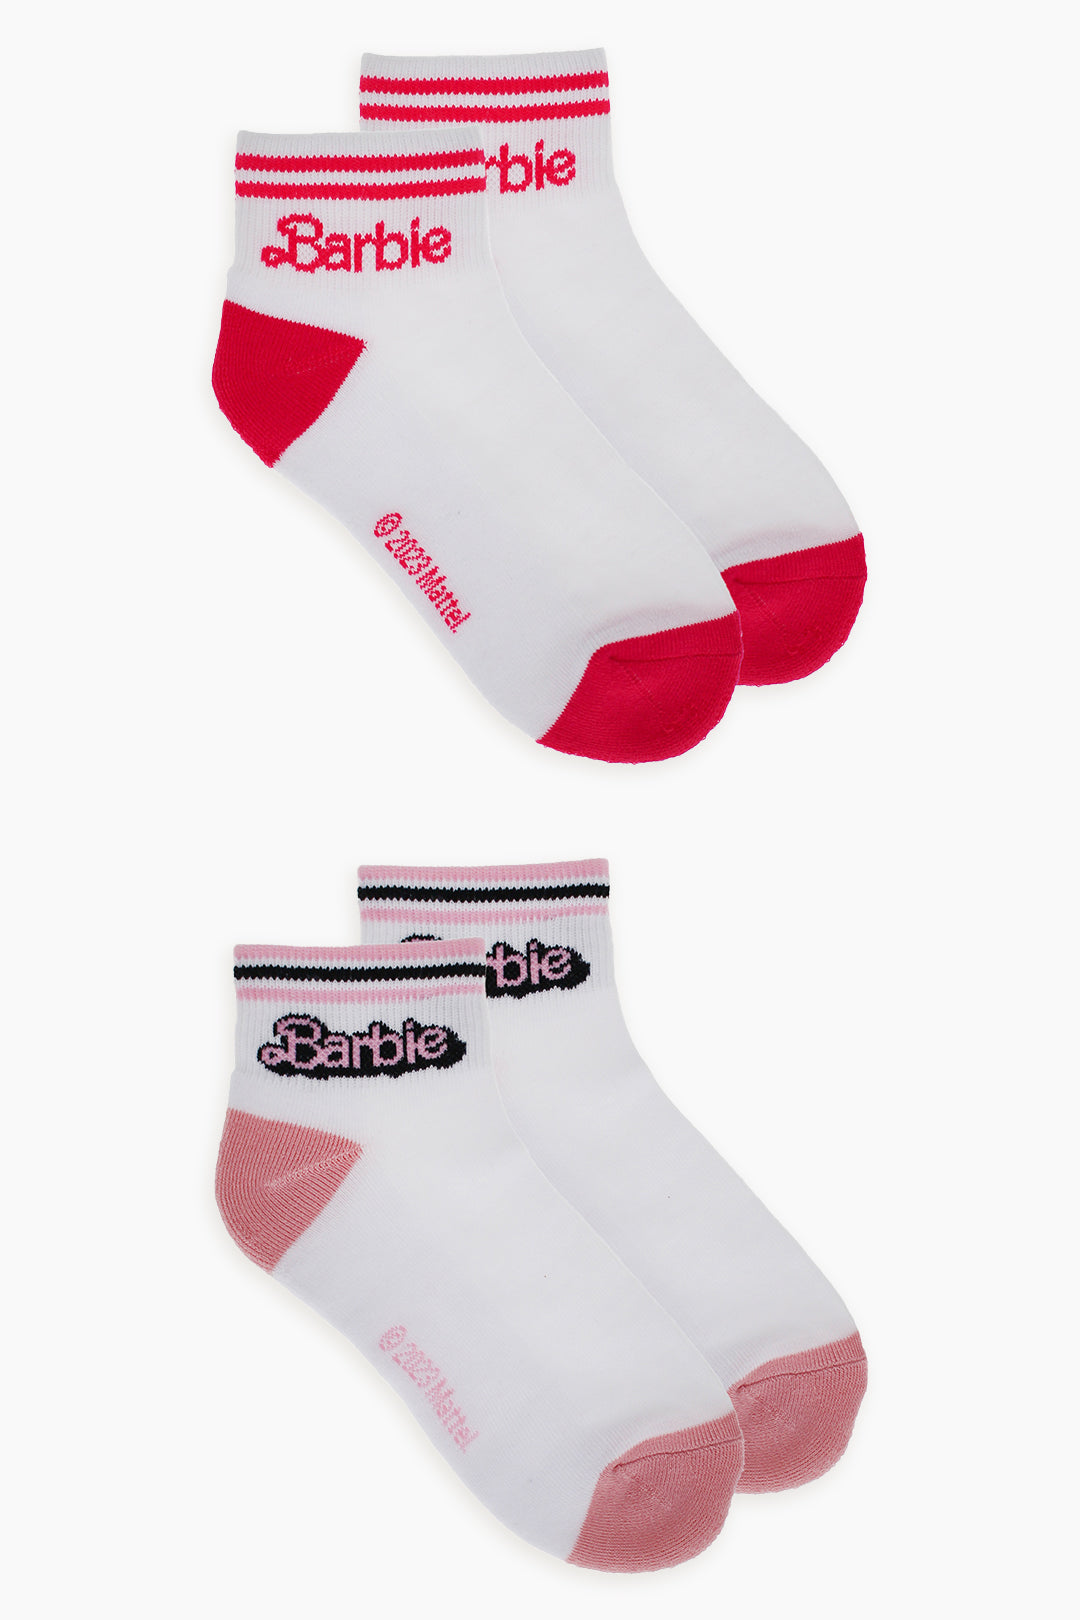 Barbie Ladies 2-Pack Half Terry Ankle Socks in White